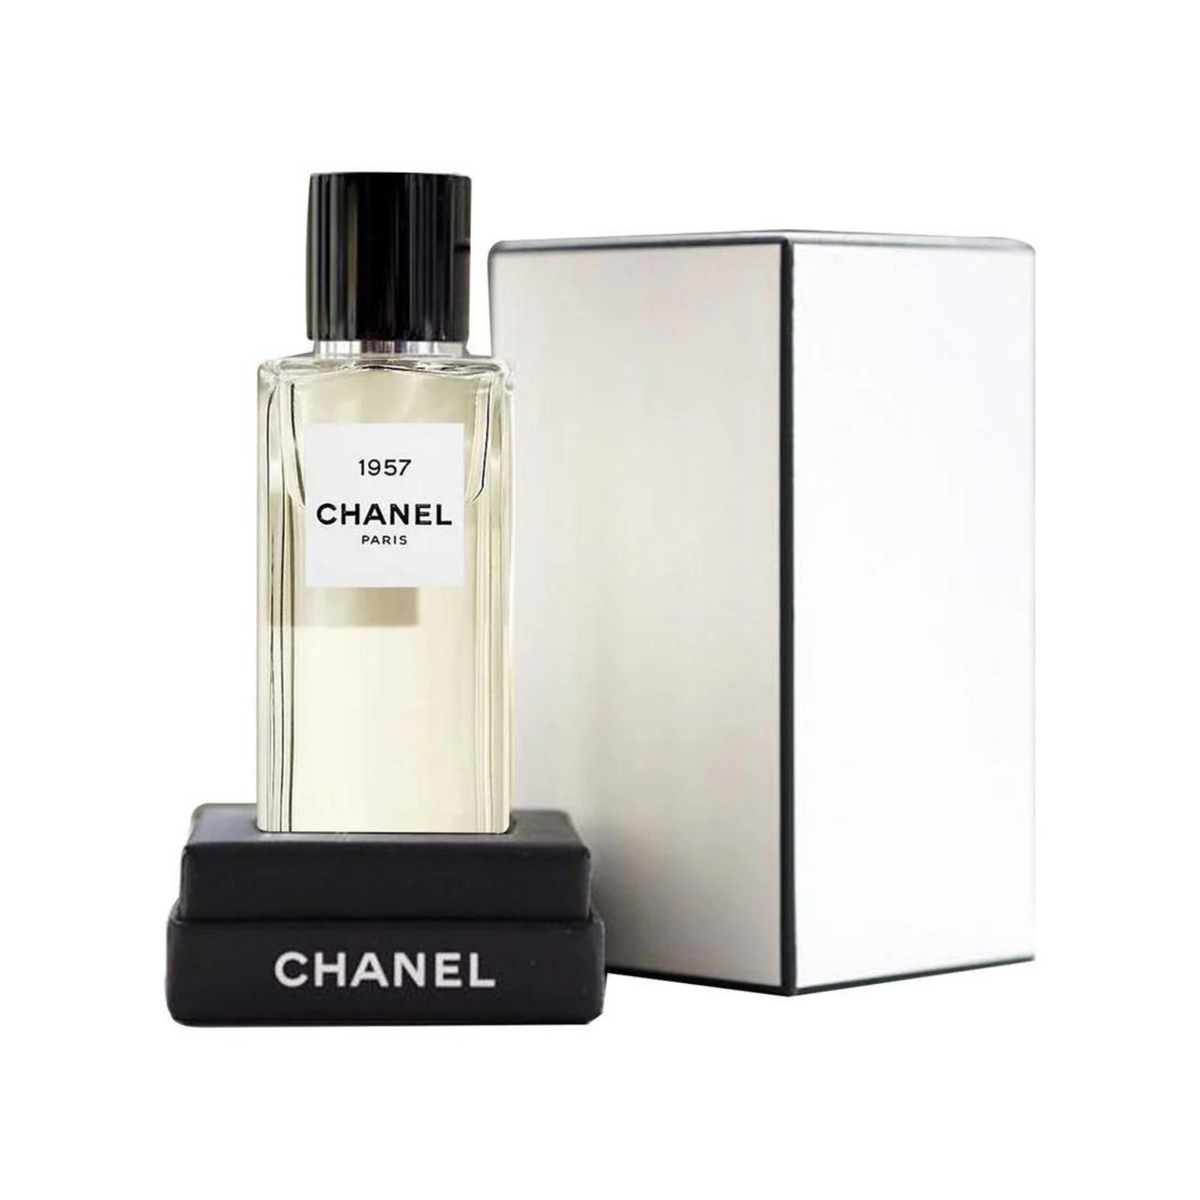 Chanel Paris 1957 Eau de Parfum